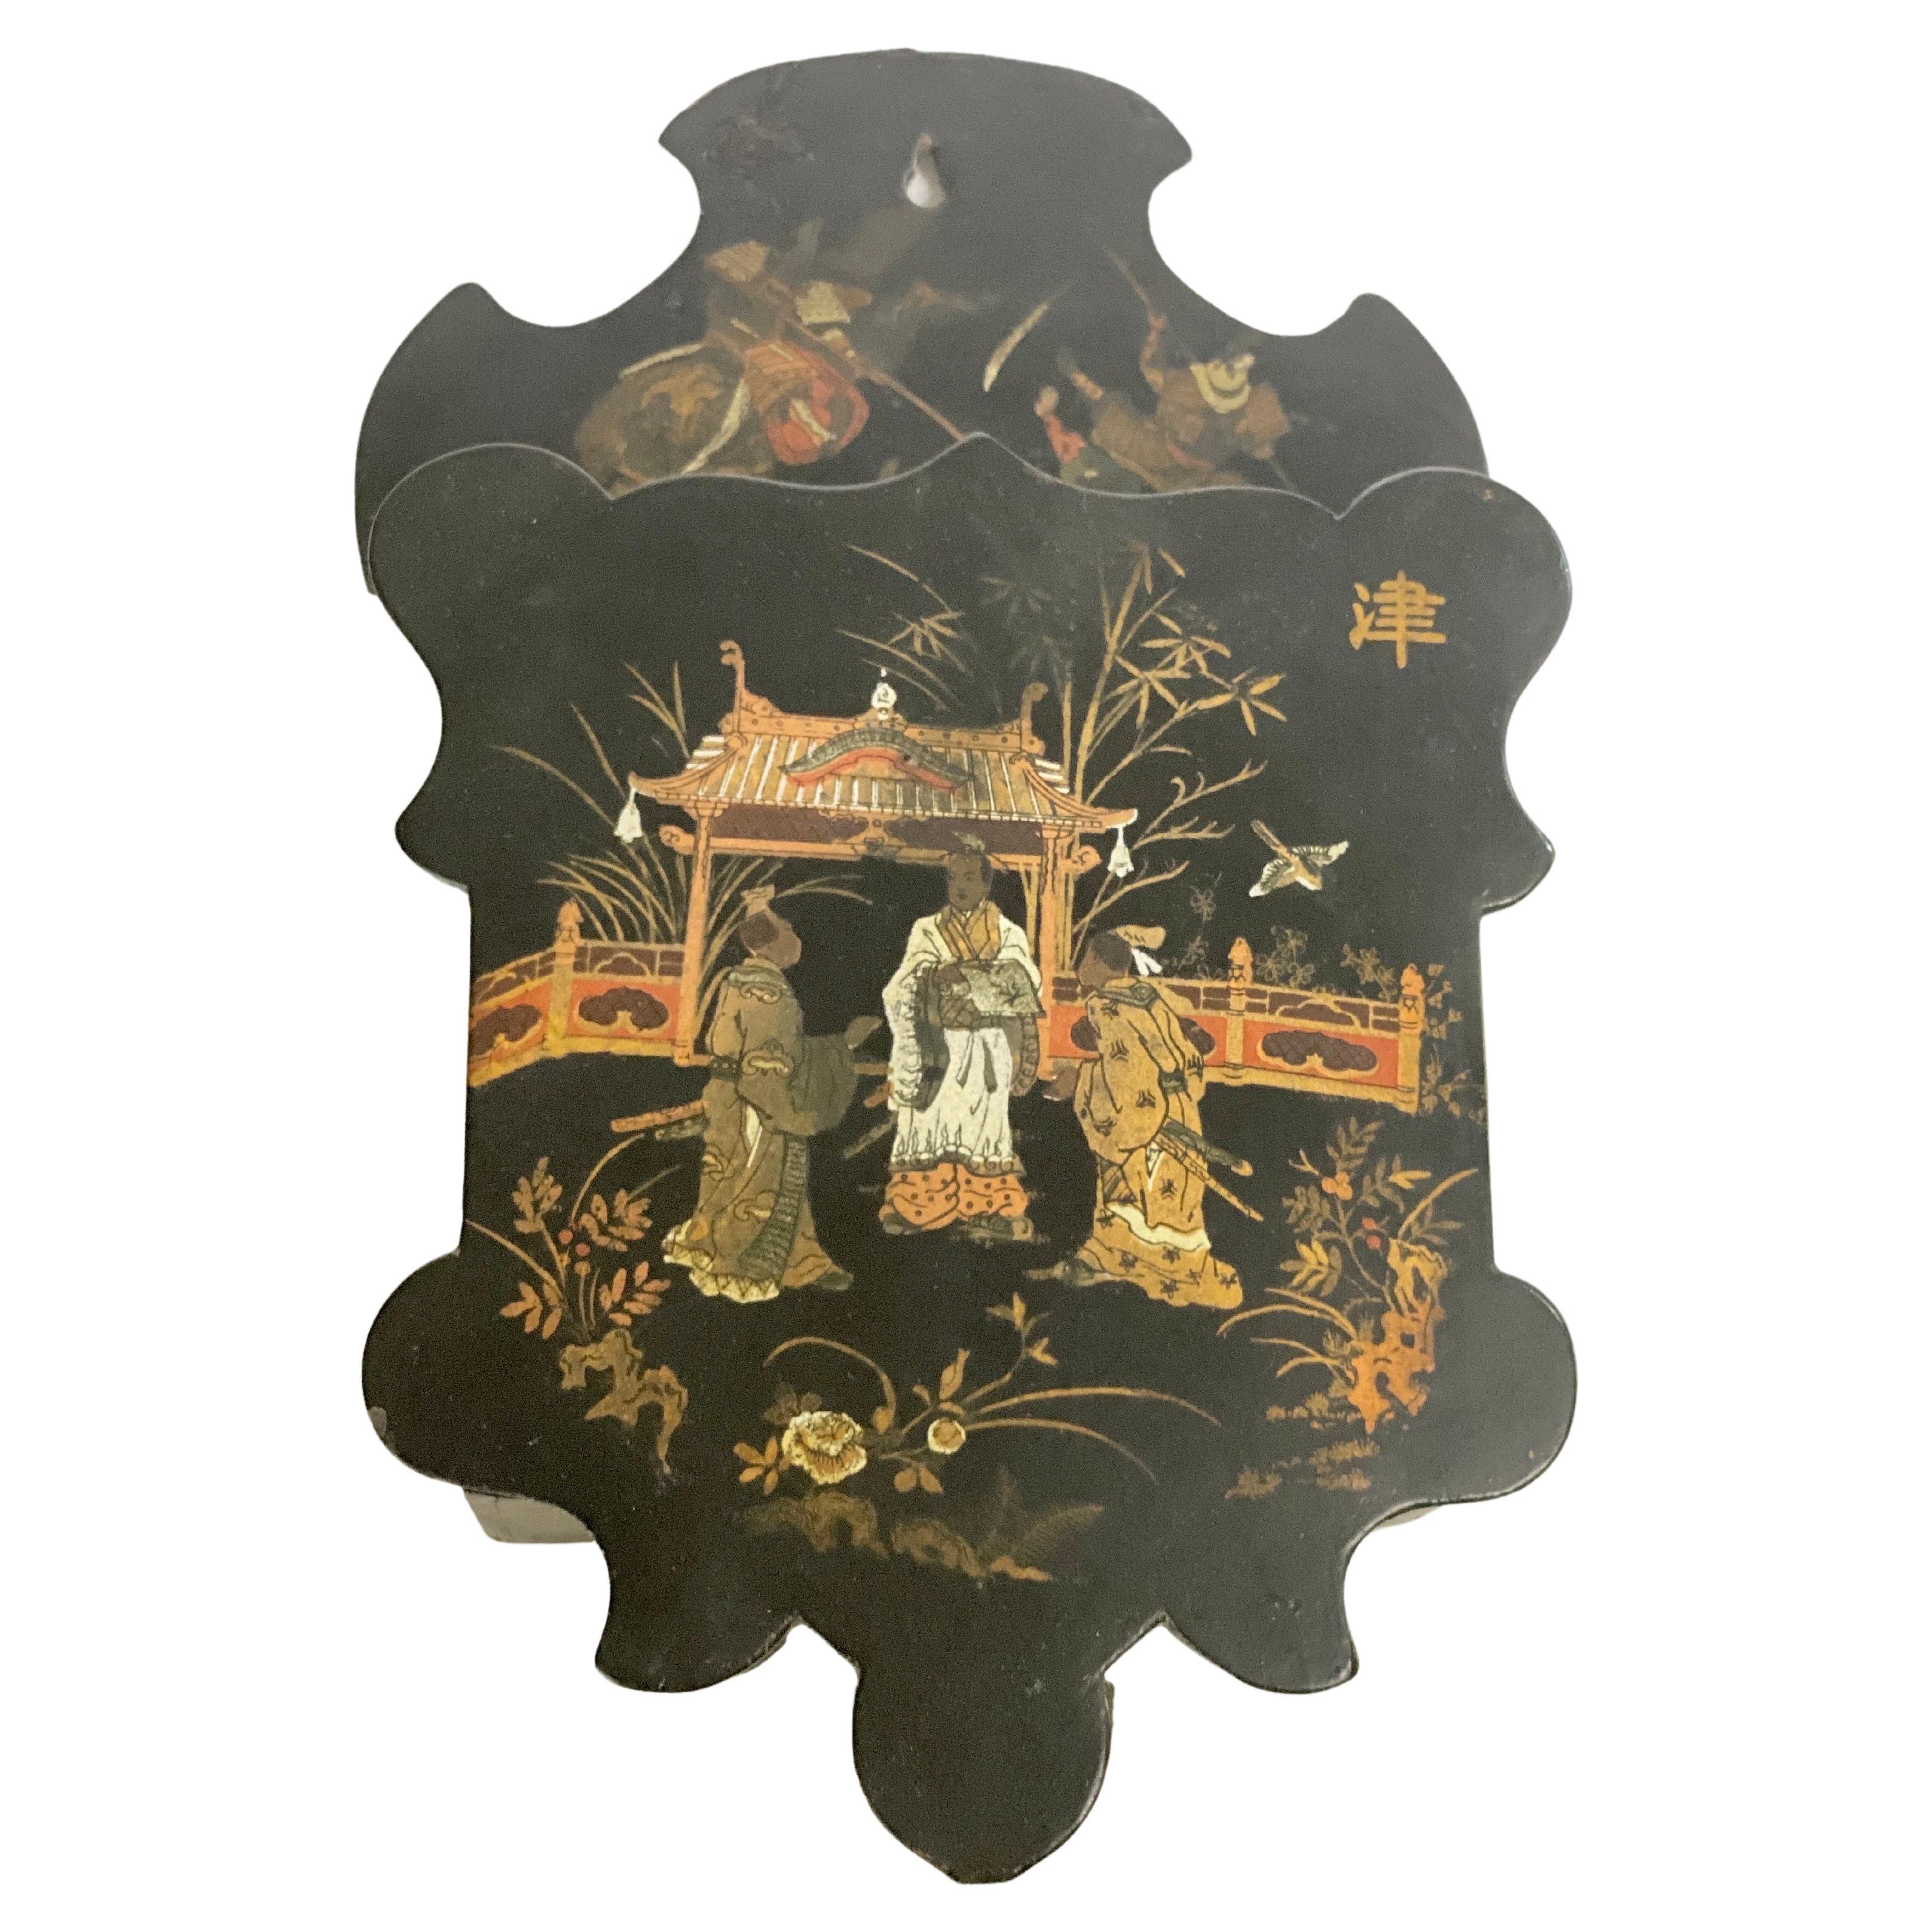 Wandschachtel oder Wandablageschale, aus Japan, 19. Jahrhundert, schwarz lackiert